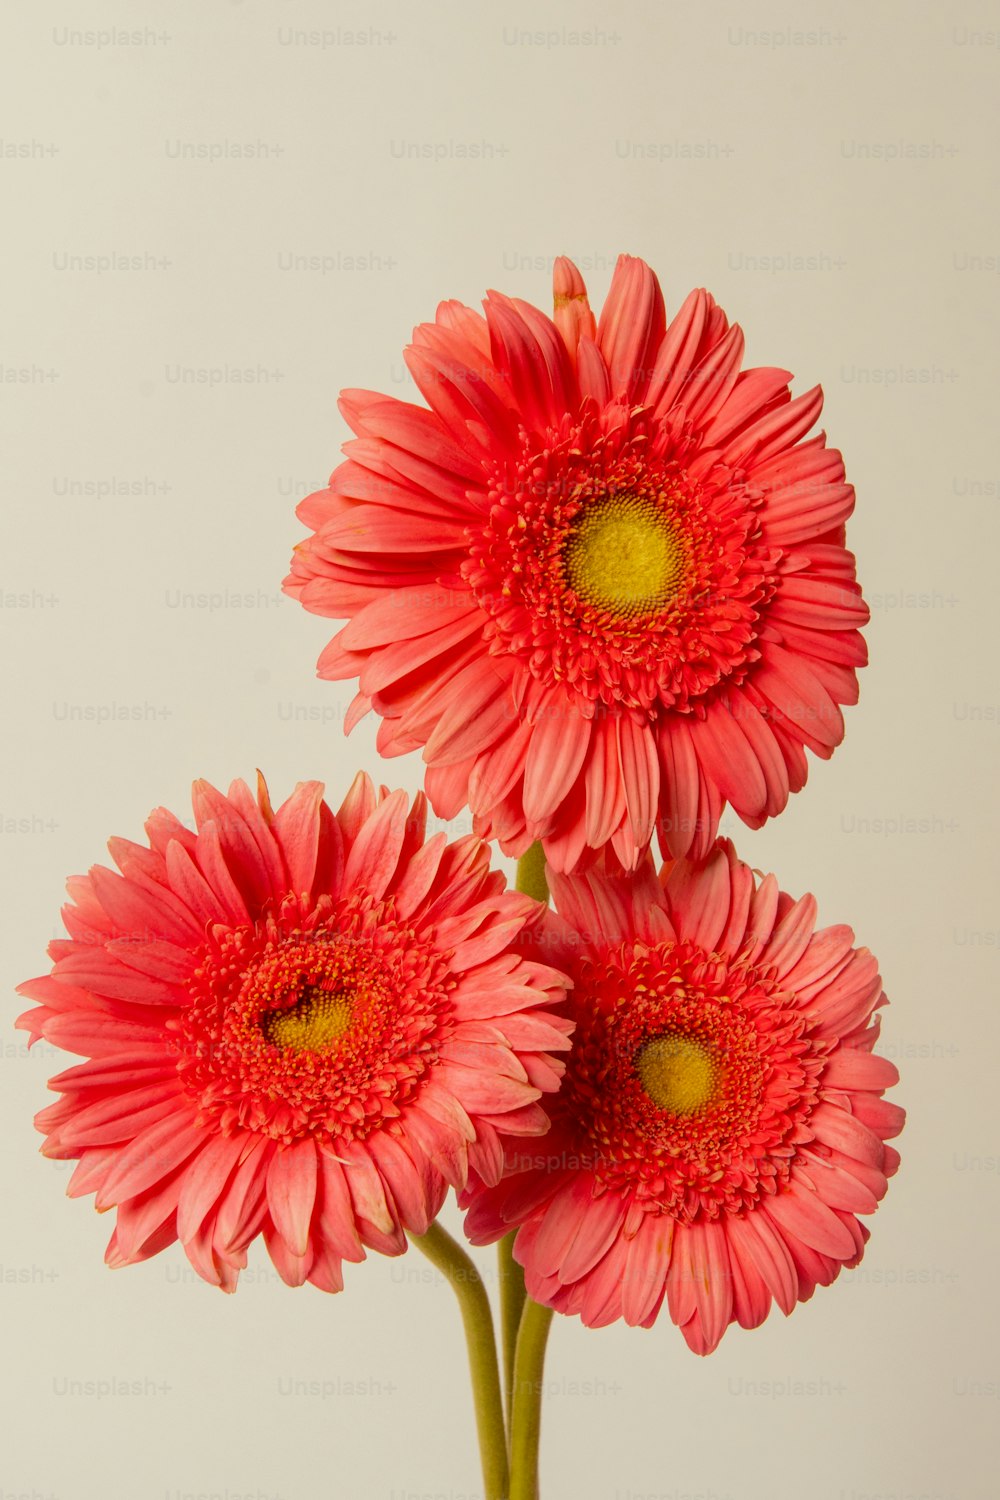 テーブルの上の花瓶に3つのピンクの花